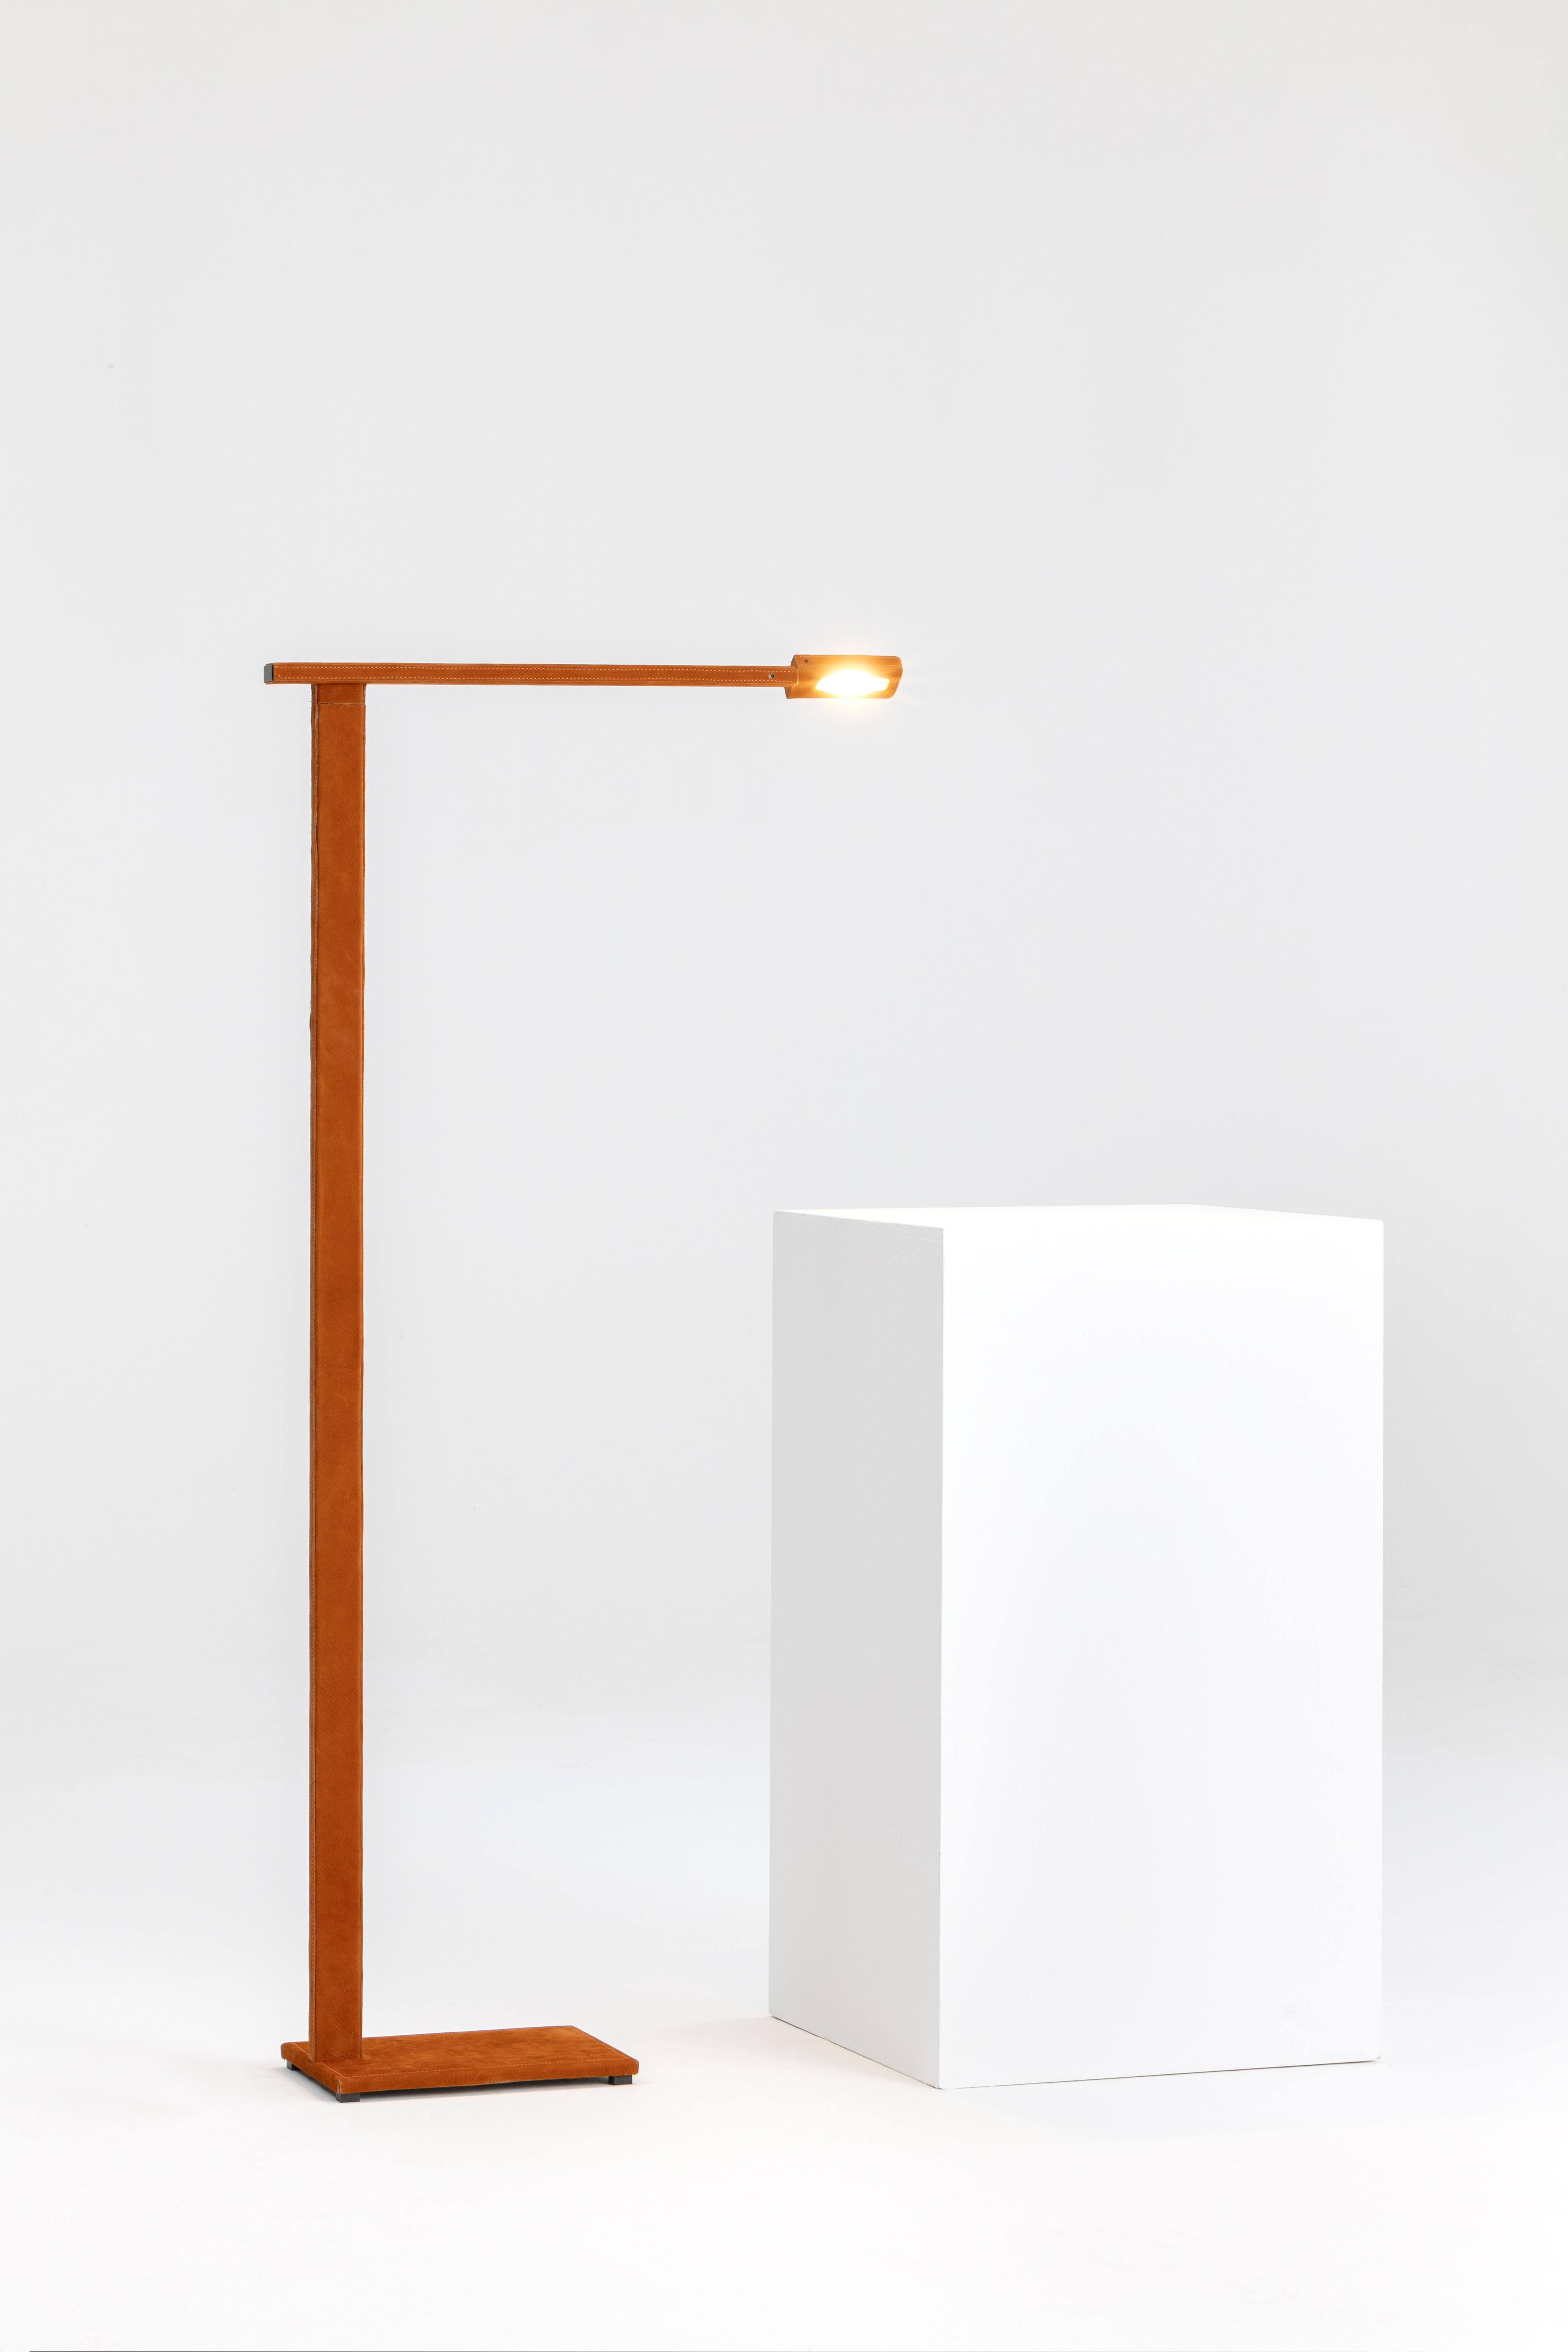 Contemporary 21st Century Design William Pianta Floor Lamp TAMARA orange nubuk LED For Sale